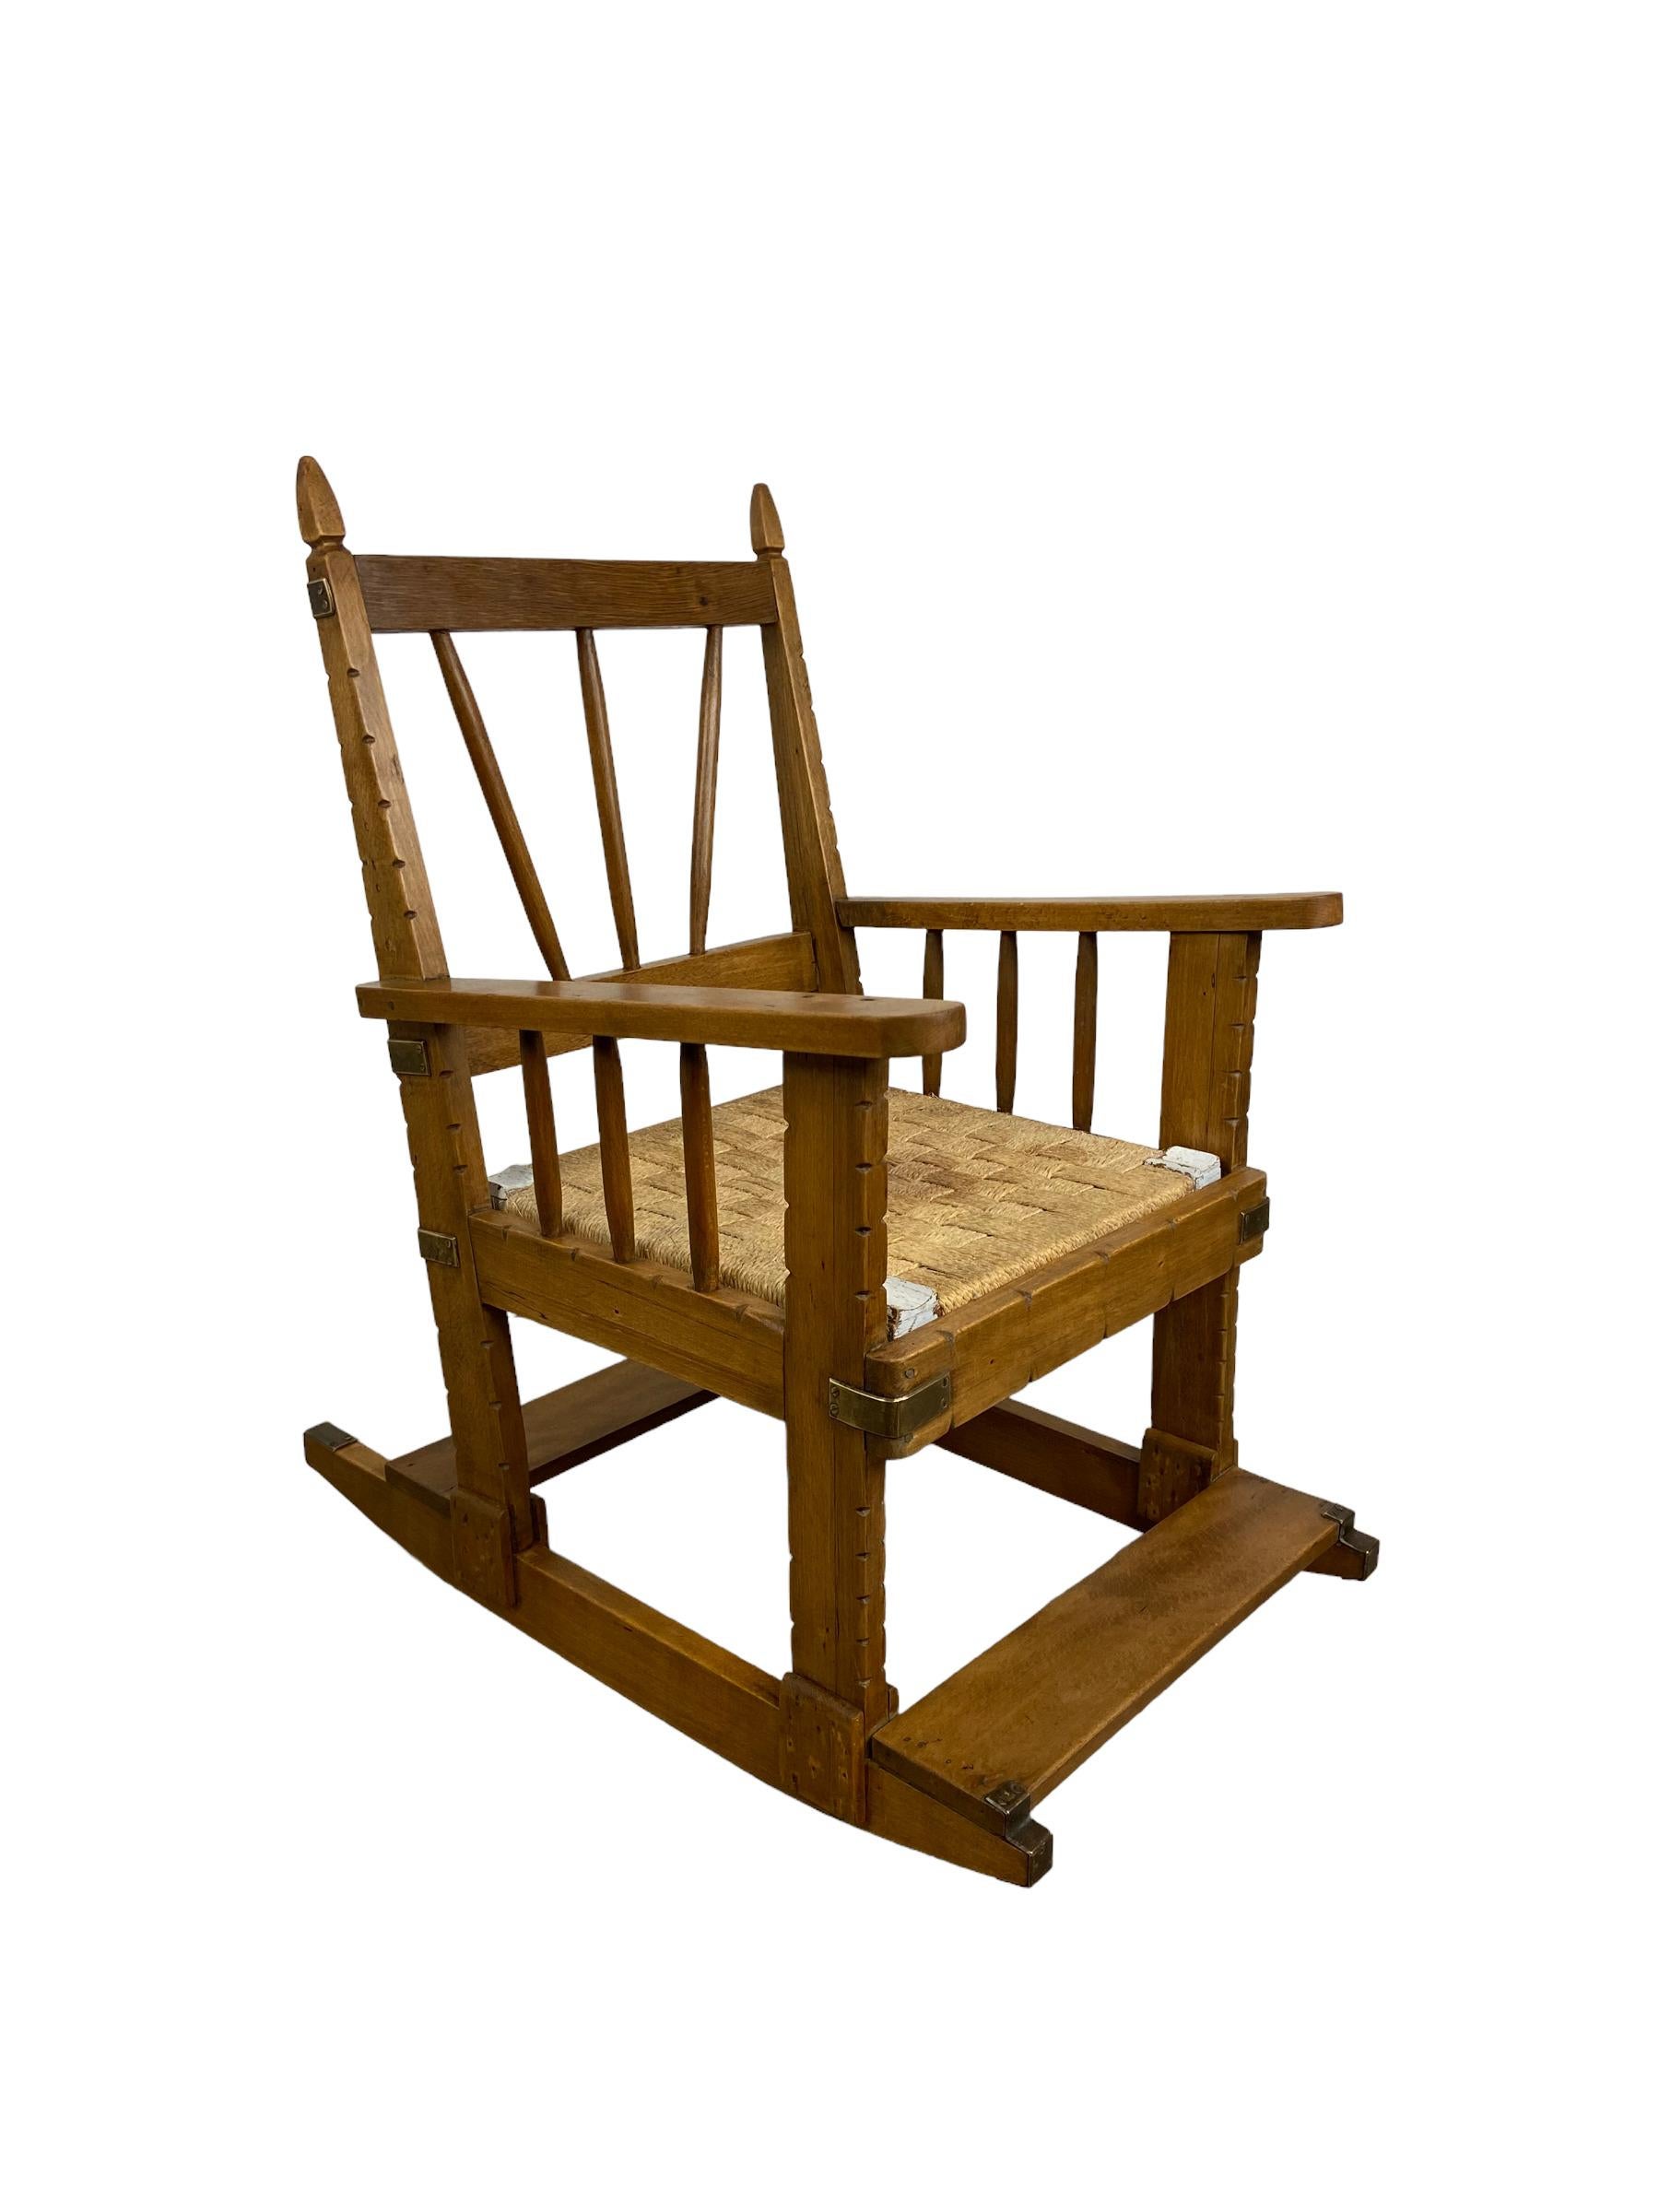 Stuhl im Arts-Crafts-Stil für ein Kind. Hergestellt aus Eichenholz in Frankreich in den 1920er Jahren. Der Sitz ist aus Papierschnur. Eine seltene Art von Schaukelstuhl, der leicht schaukelt und mit Kupferplatten verziert ist. Dieses Vintage-Objekt